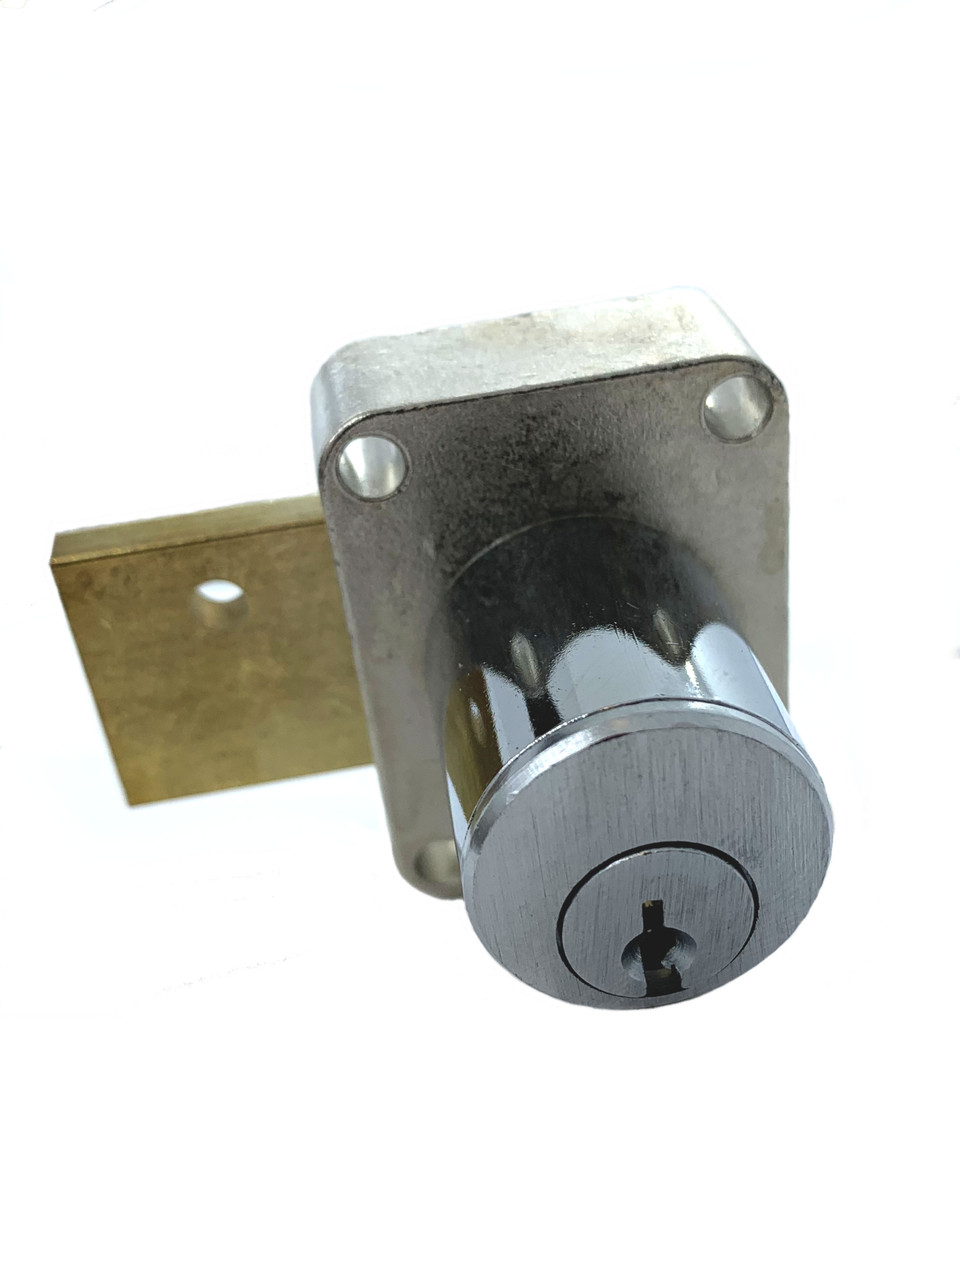 CompX National C8173-26D Pin Tumbler Door Lock